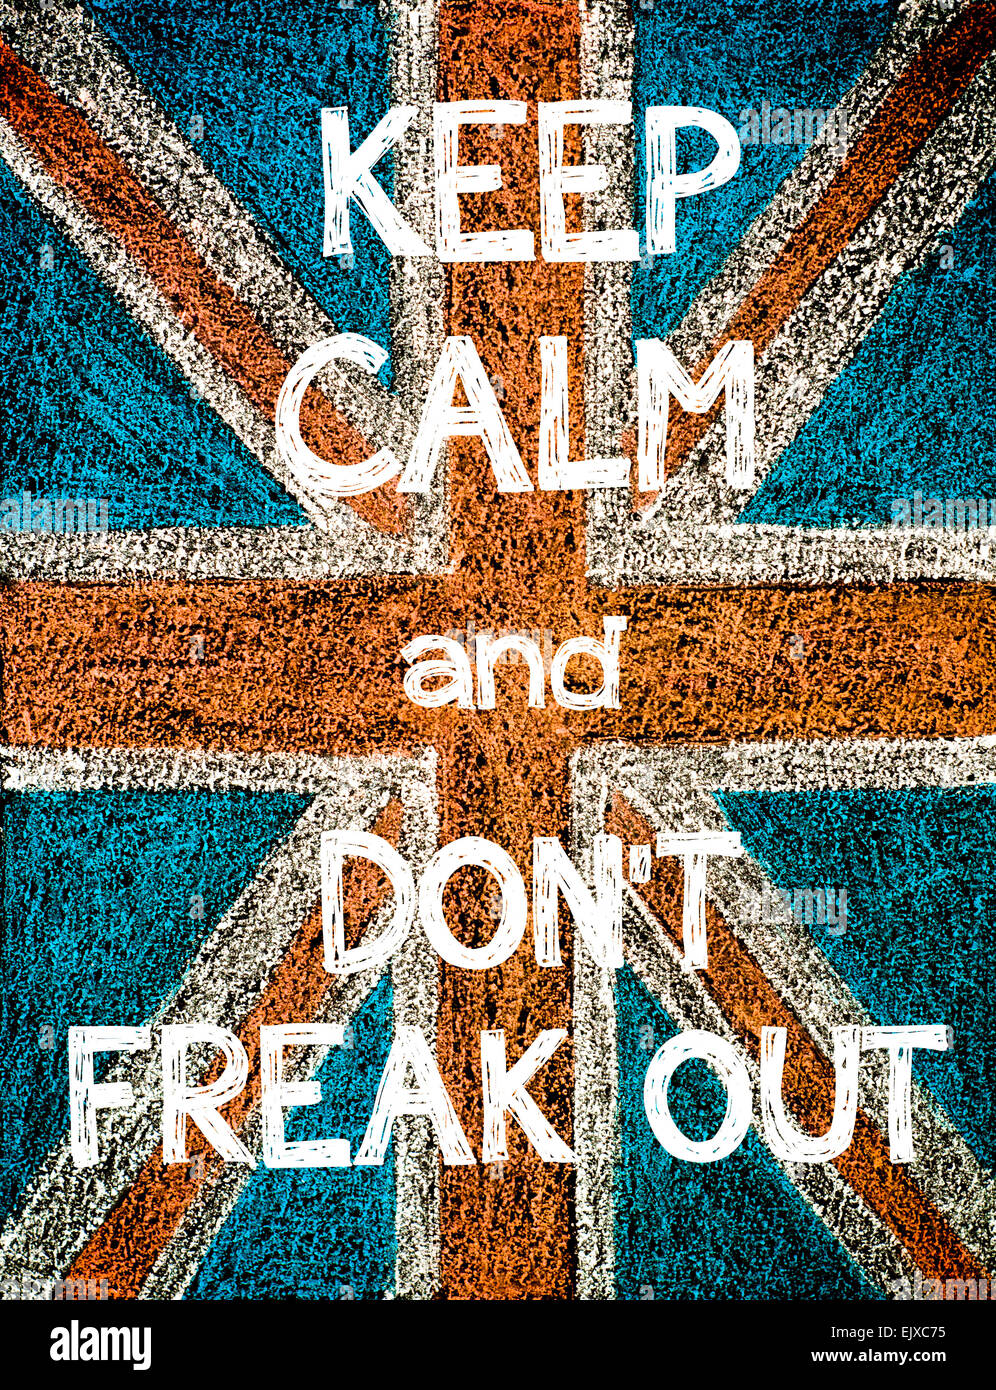 Mantenere la calma e non Freak Out. Regno Unito (British Union Jack flag), vintage del disegno a mano con un gessetto sulla lavagna, umorismo Concetto di immagine Foto Stock